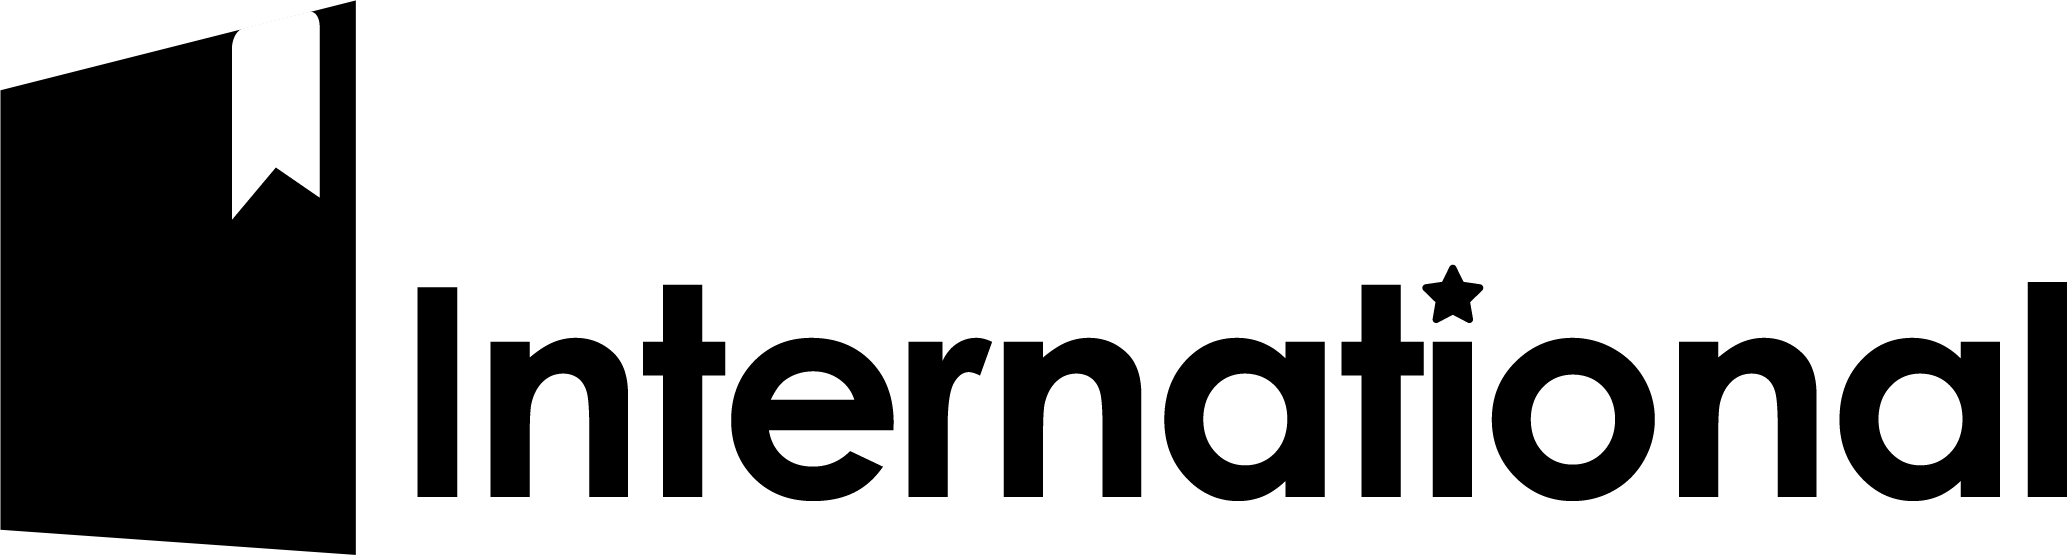 International logo.png